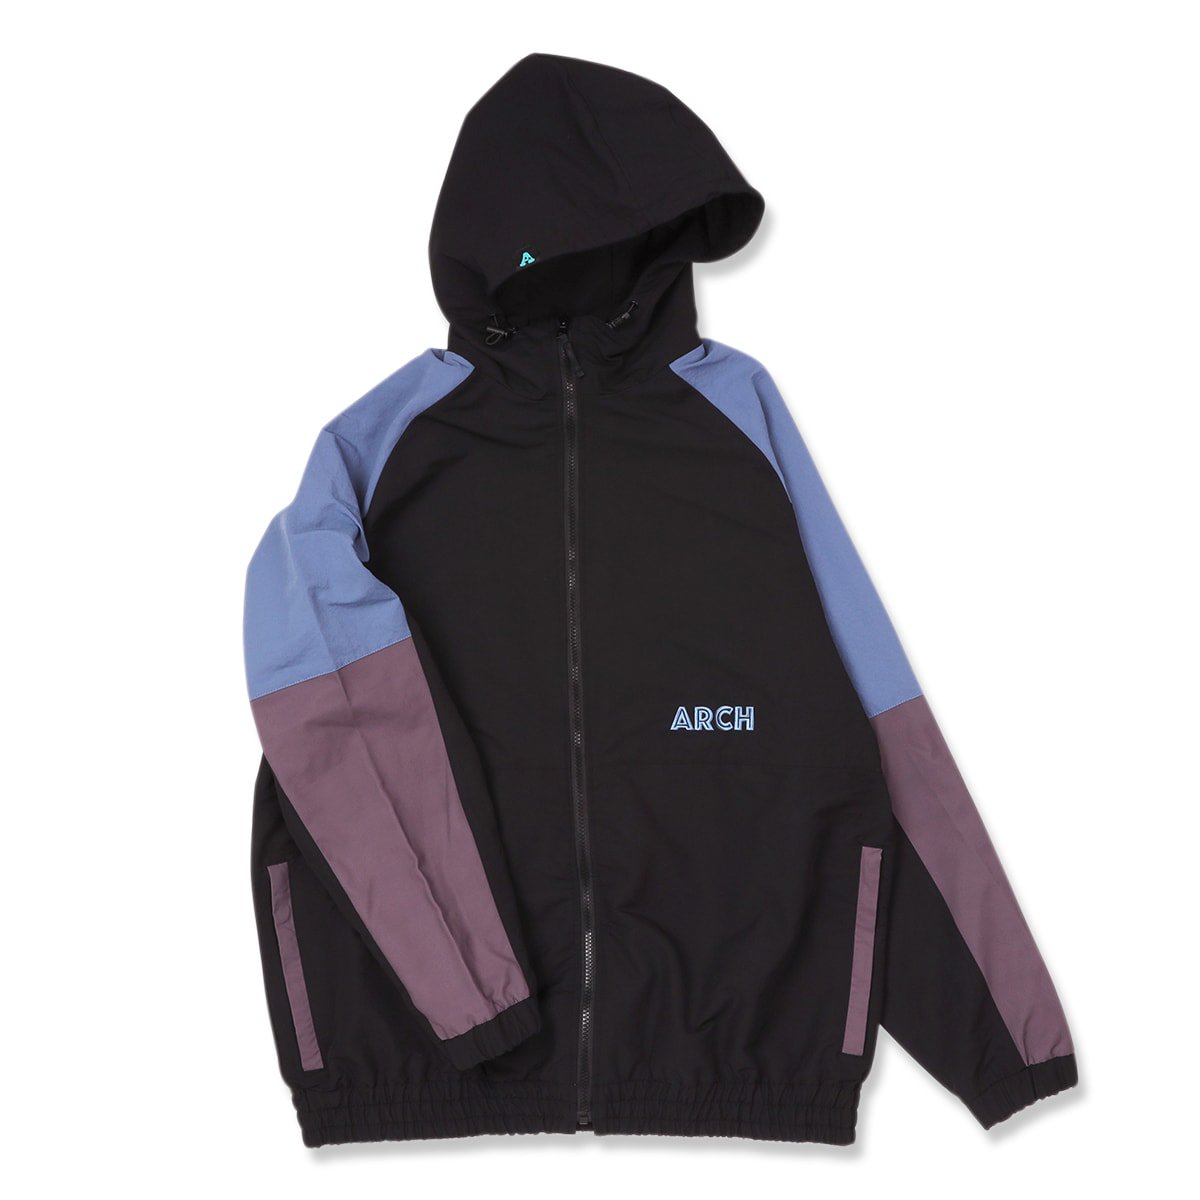 paneled nylon jacket【black】 - Arch ☆ アーチ